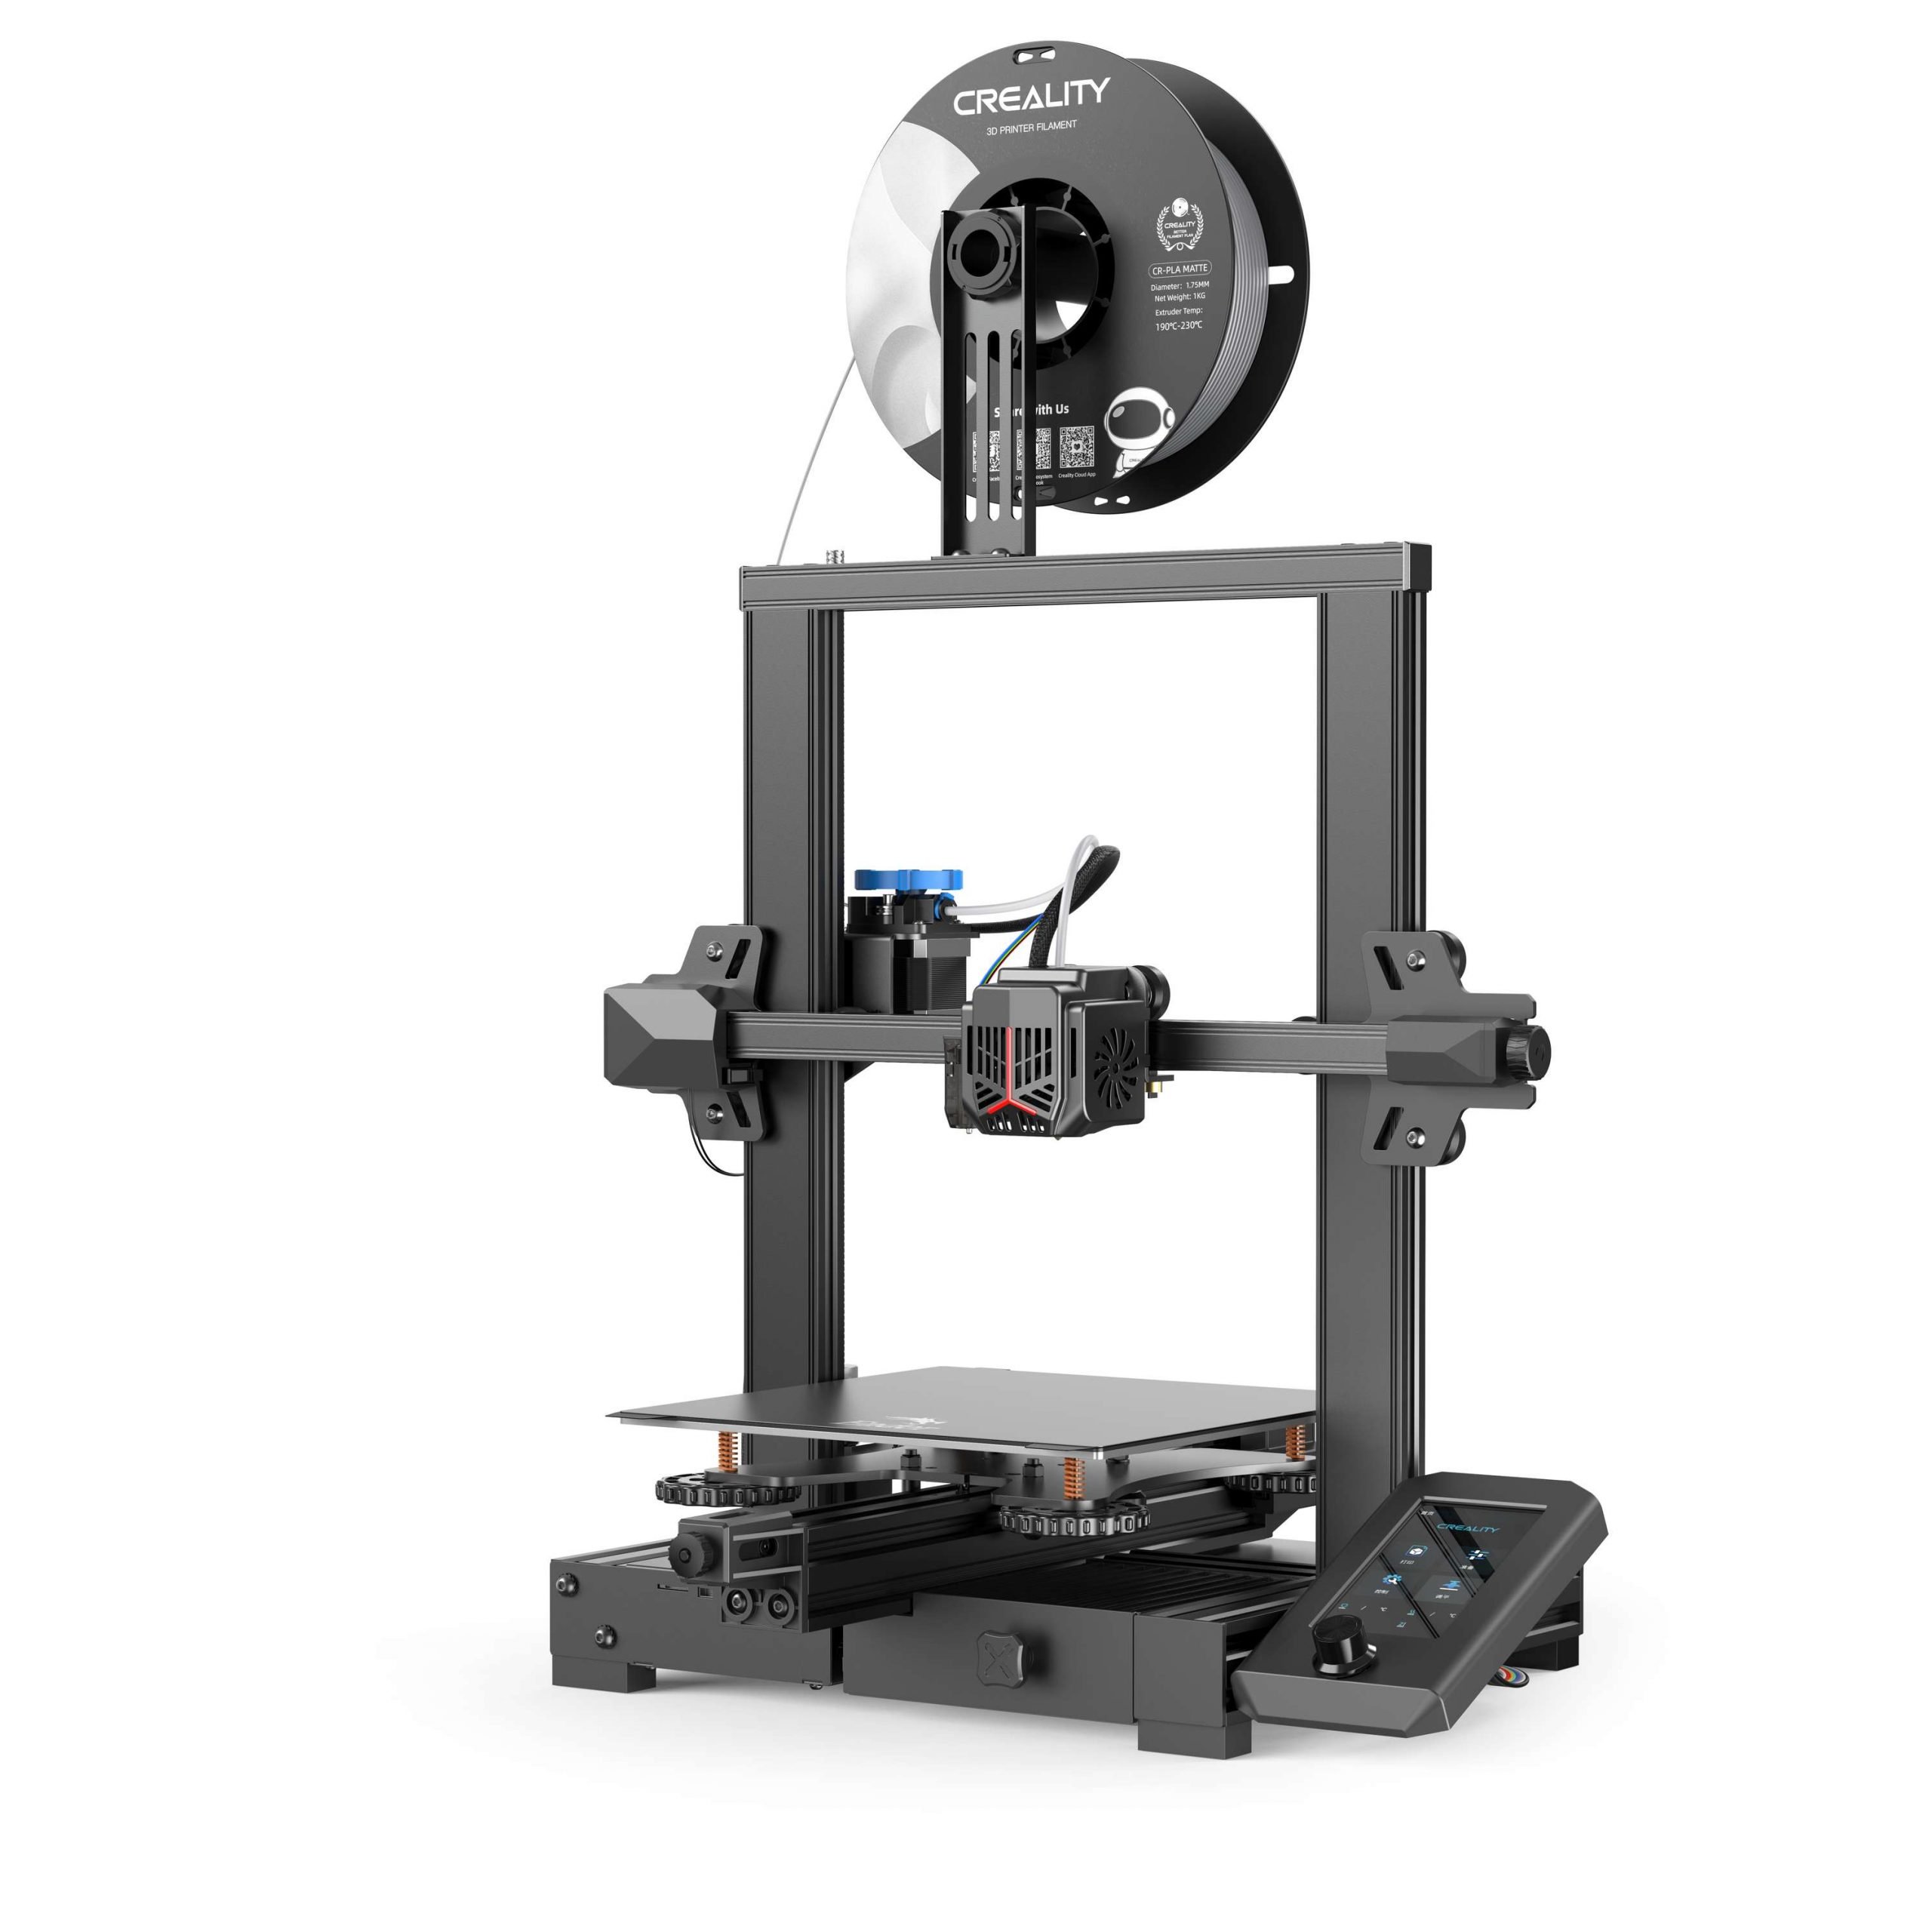 Pla : Le filament 3D pour imprimante 3D - Le meilleur qualité / Prix du net